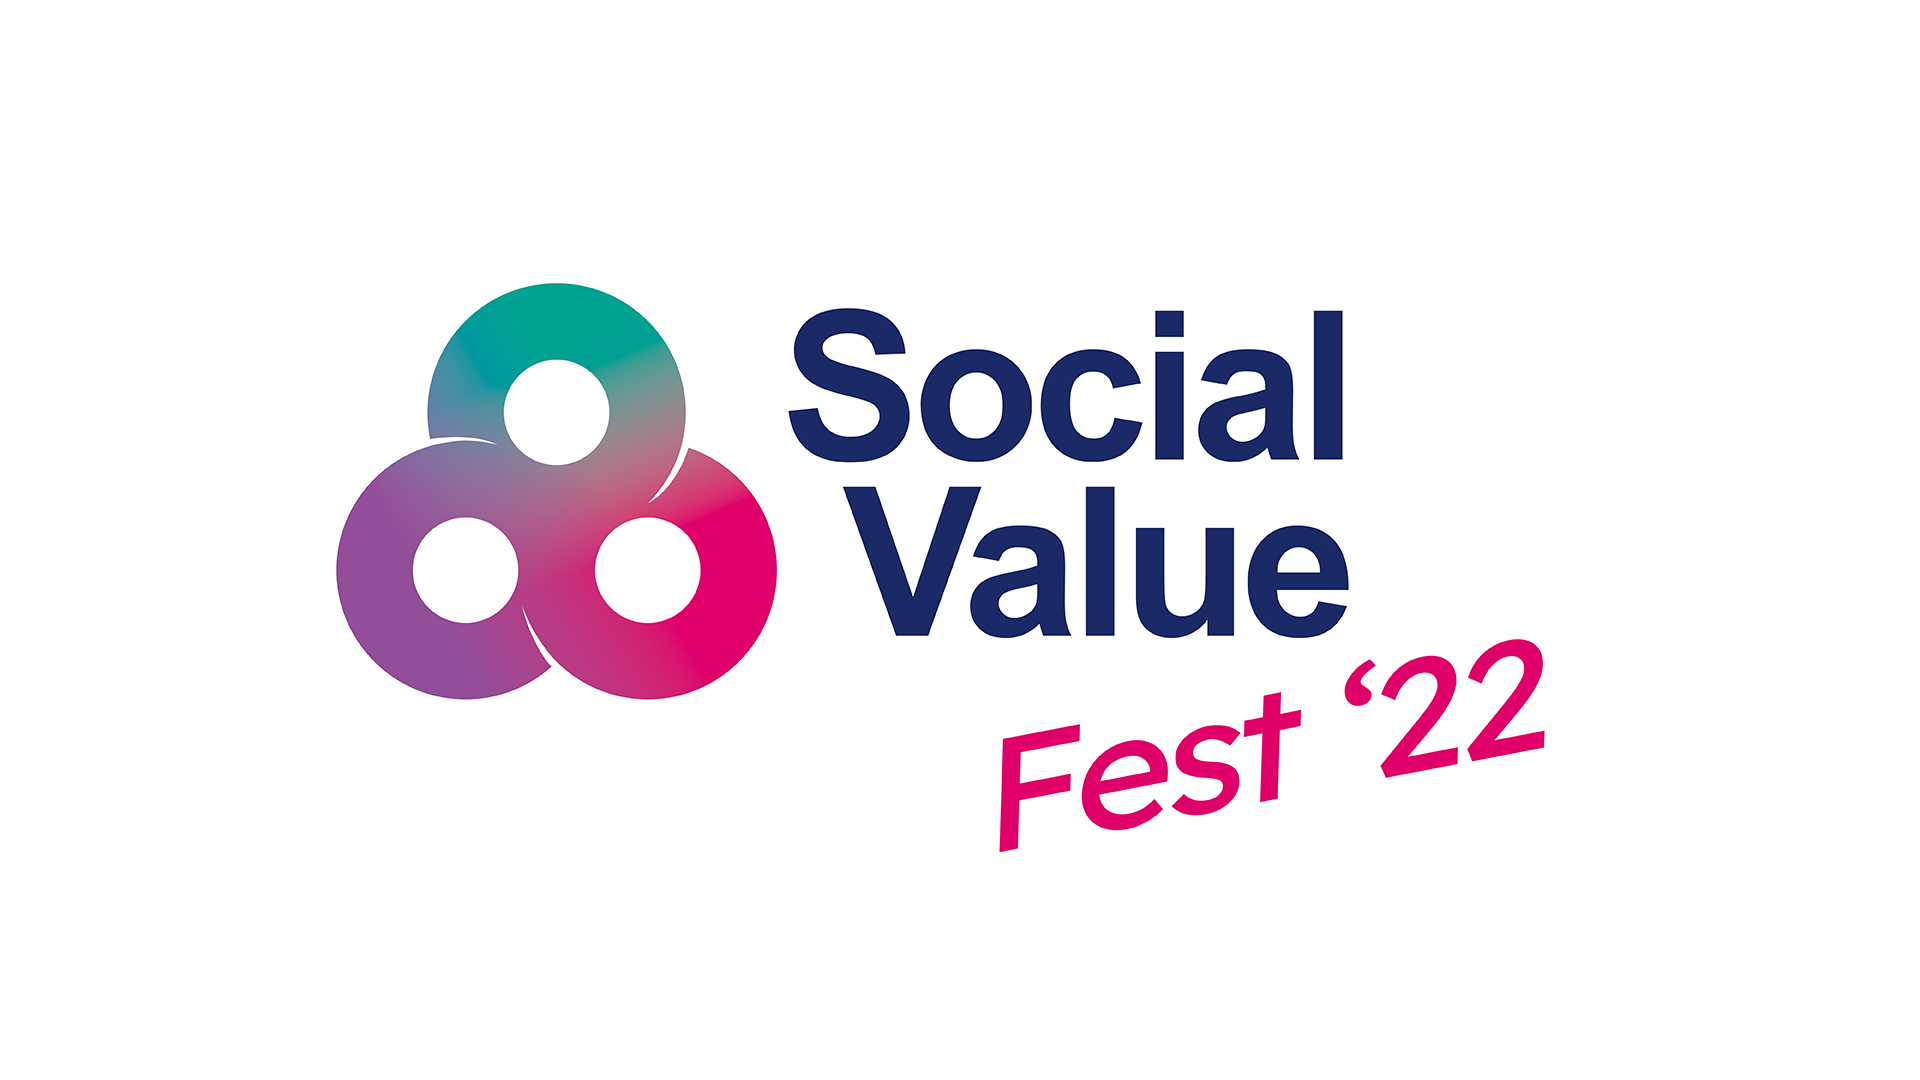 Social Value Fest 2022 logo